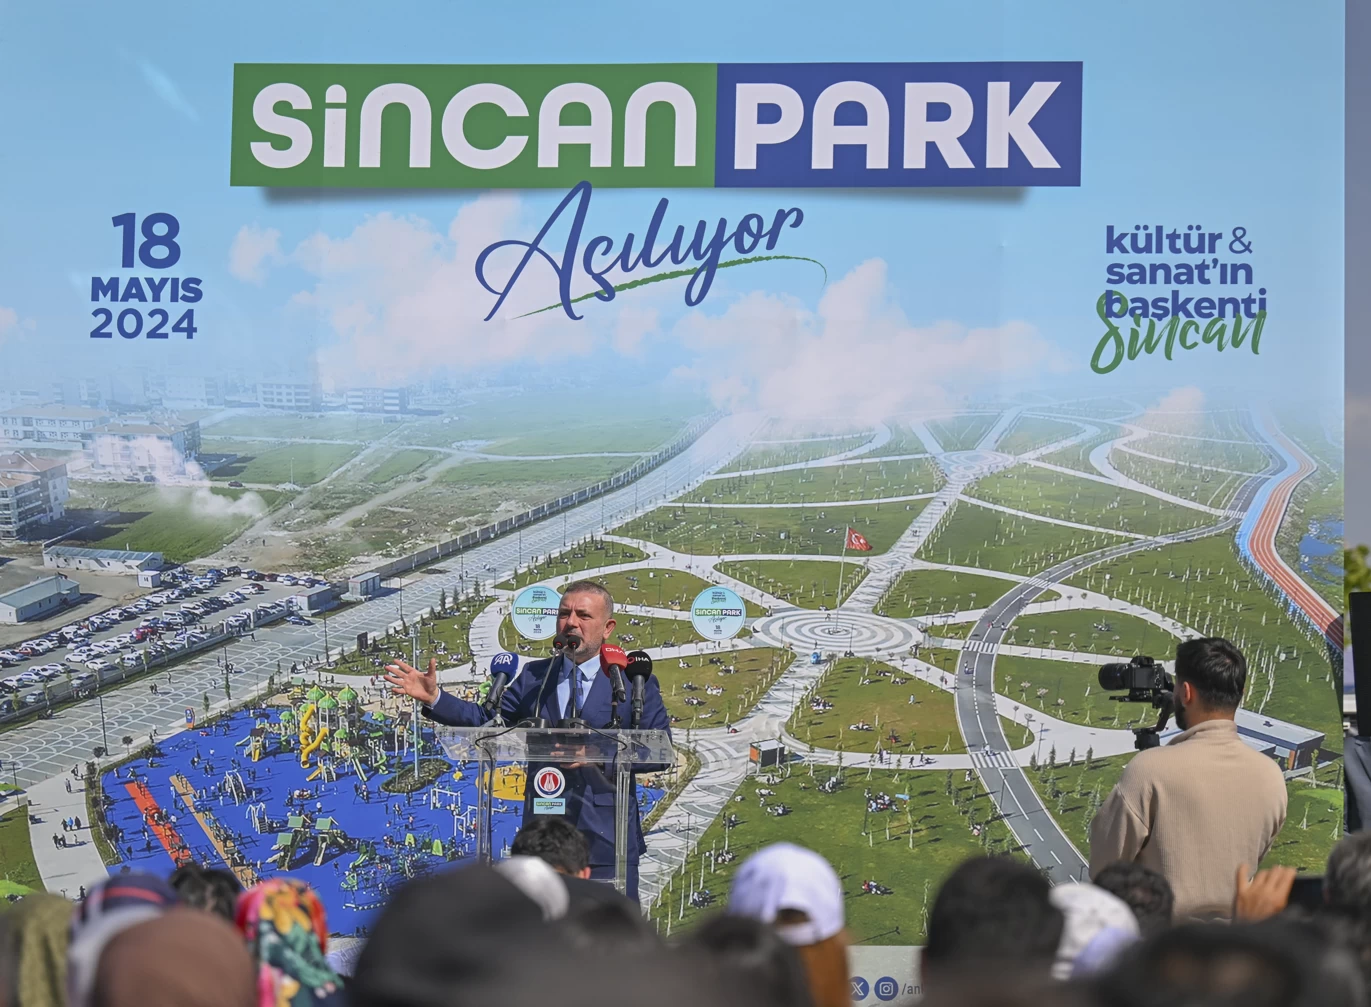 Sincan Belediyesinin bataklıktan akıllı parka dönüştürdüğü Sincan Park hizmete açıldı